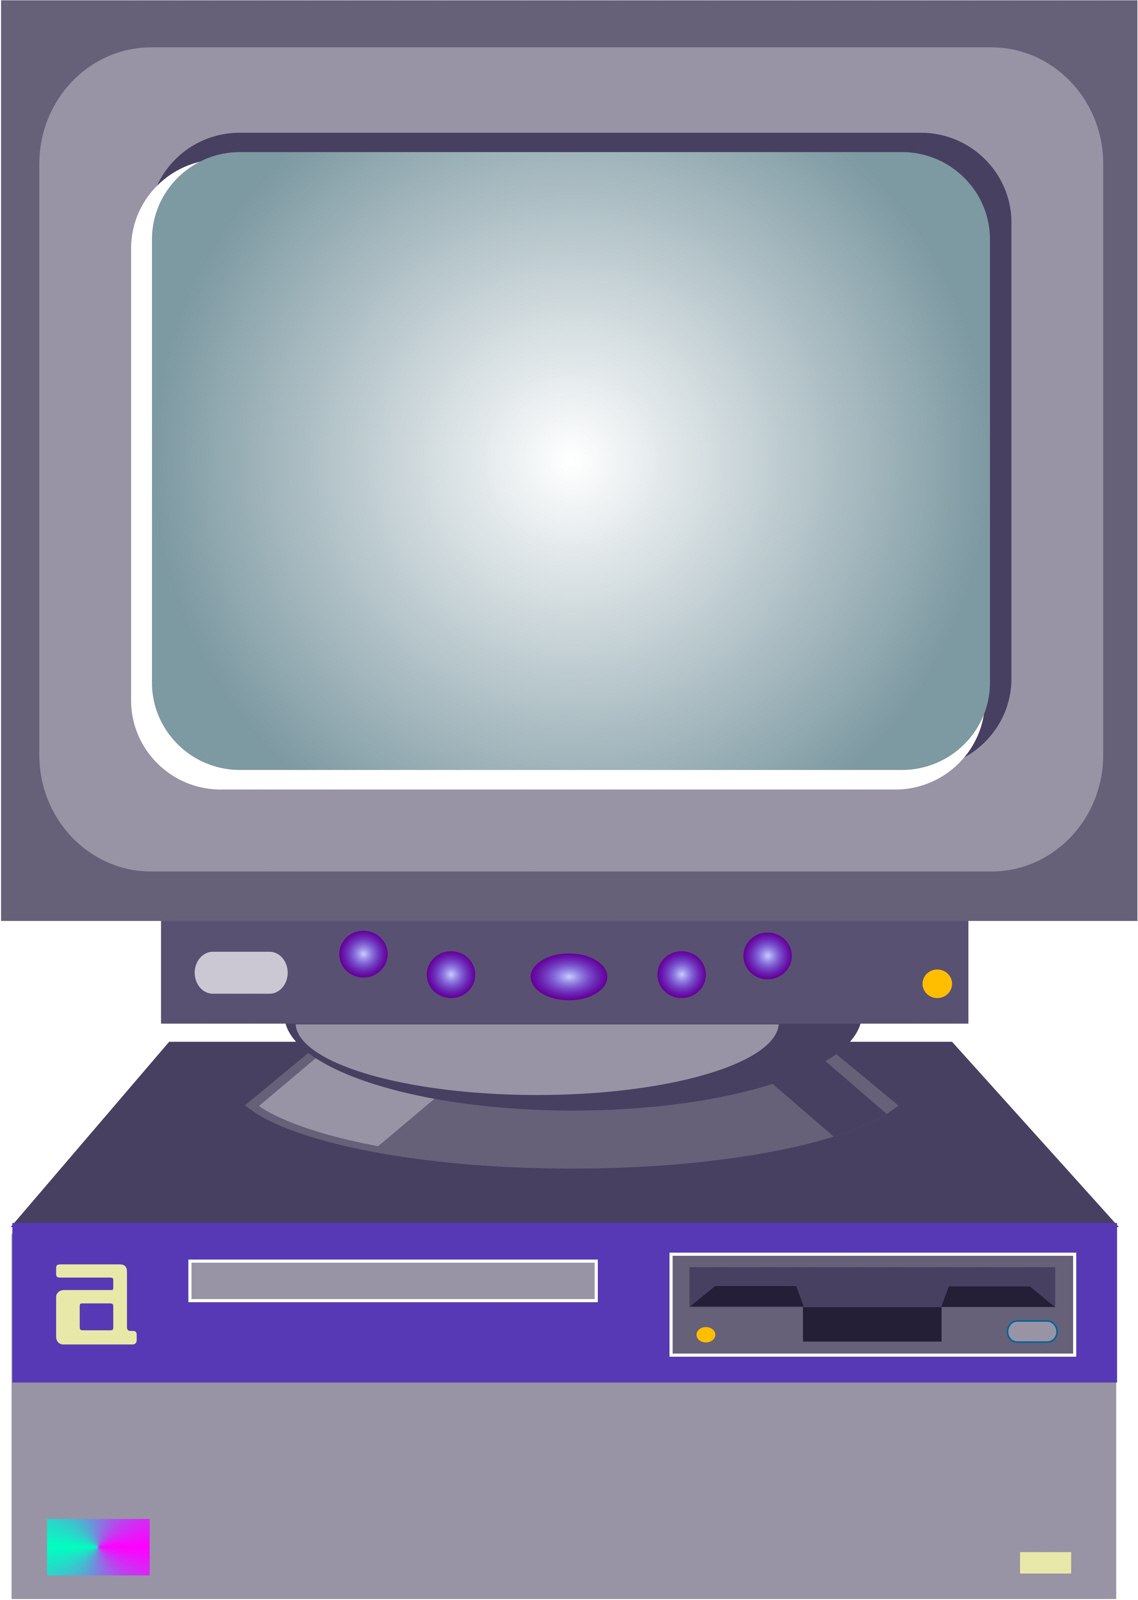 Desktop computer photo